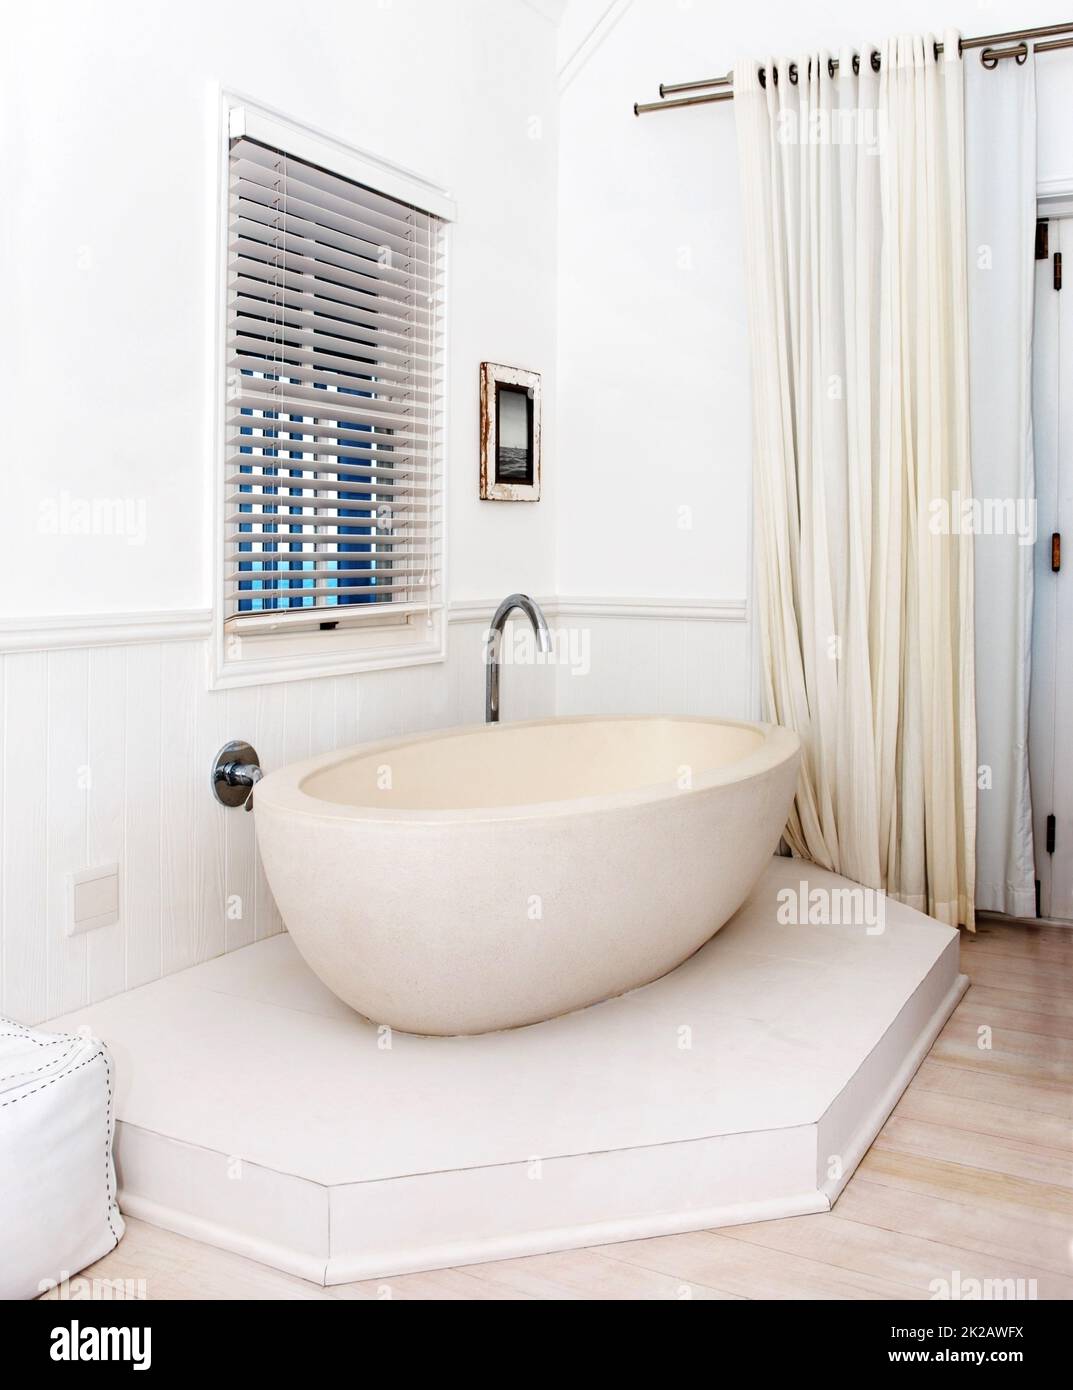 Entrate nel lusso moderno. Splendida vasca bianca nell'angolo di un bagno elegante. Foto Stock